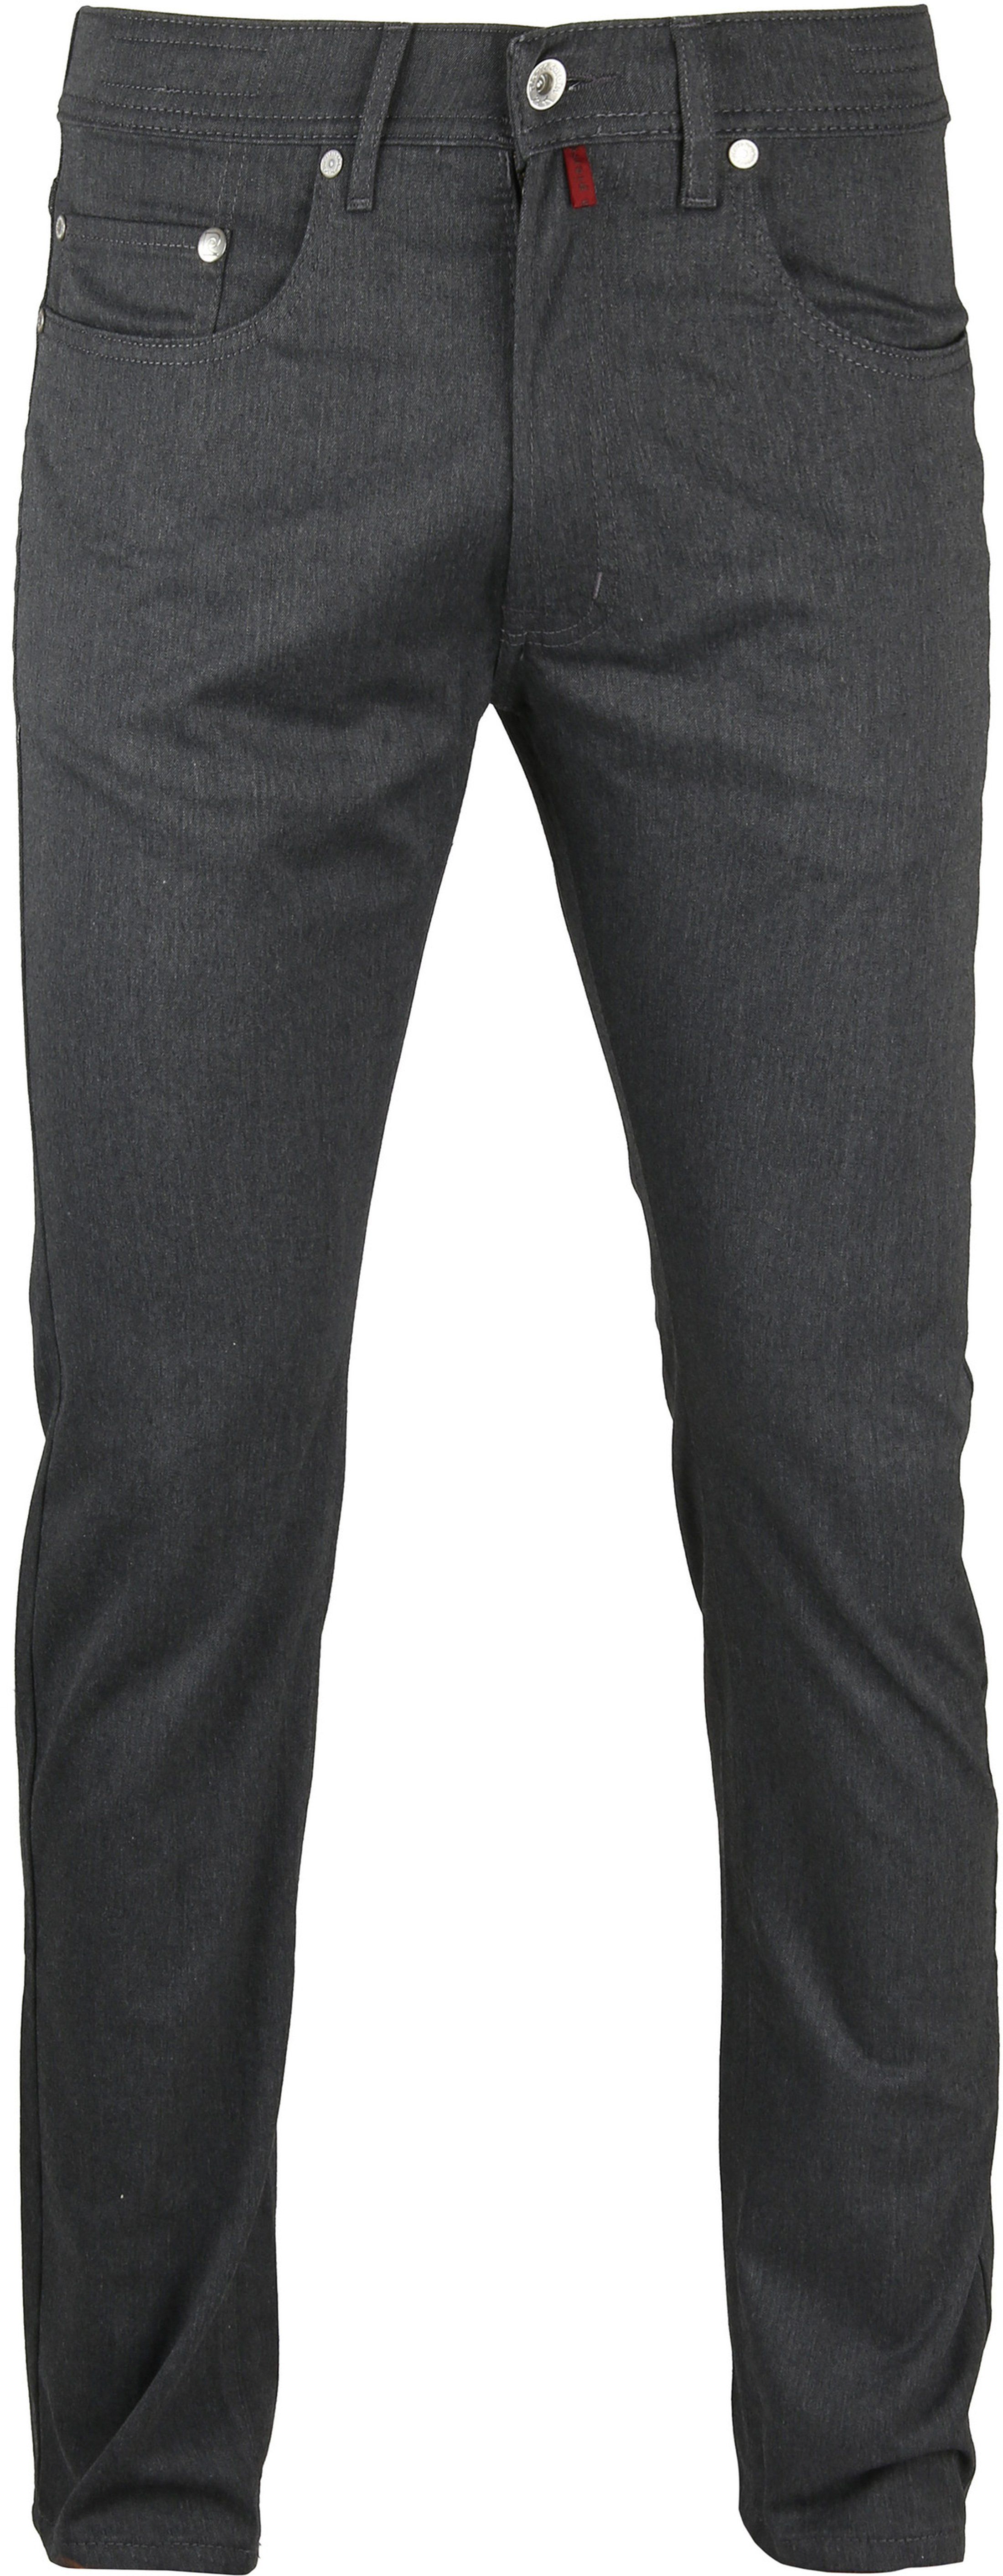 Pierre Cardin Jeans Lyon Grey size W 32